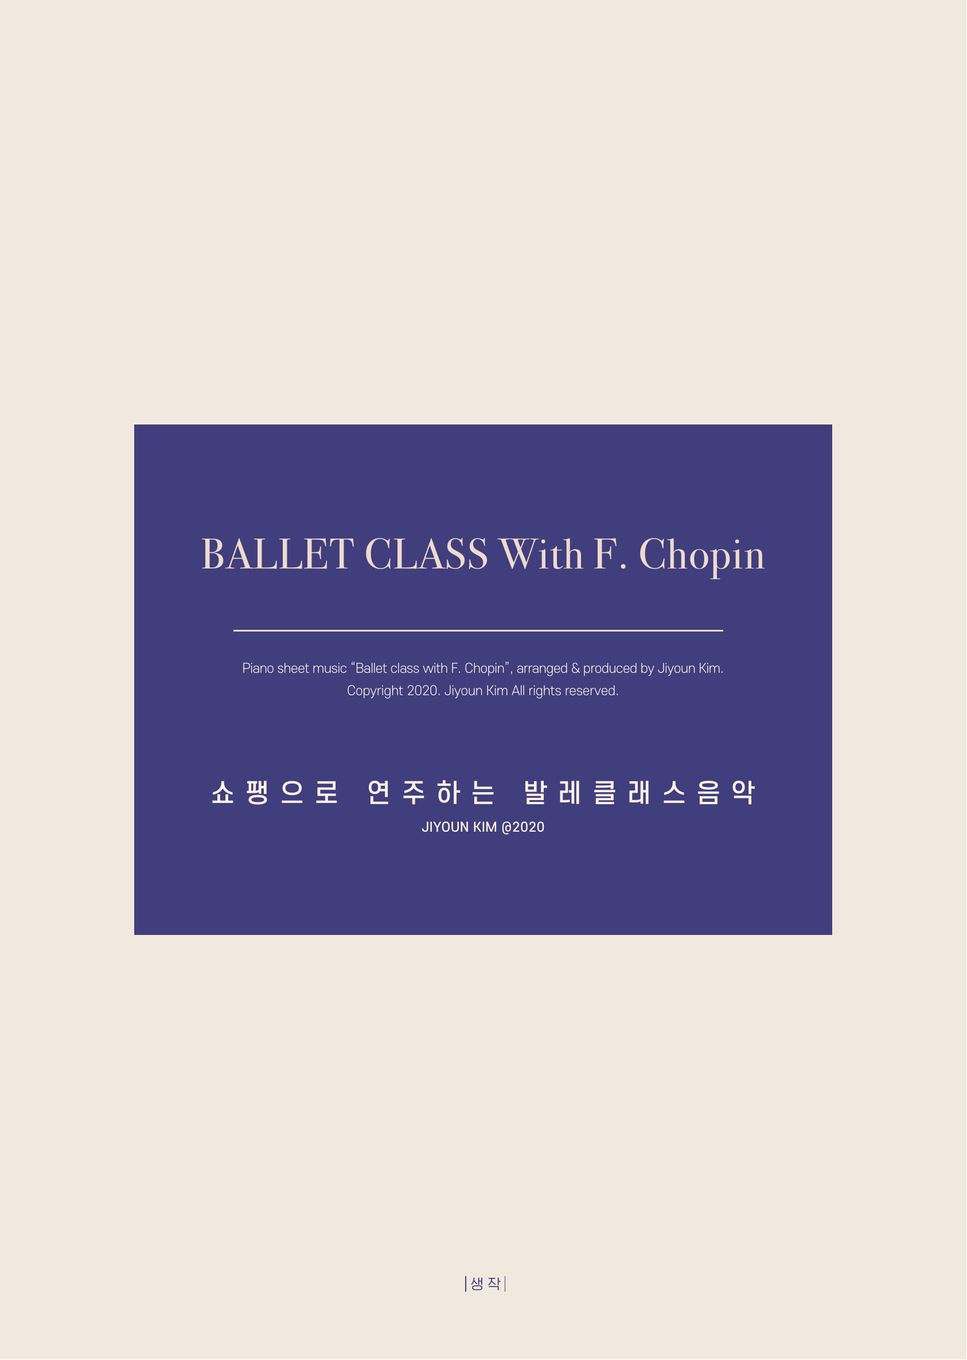 F. Chopin - Ballet Class with F. Chopin - 30. Coda Ⅱ by Jiyoun KIM